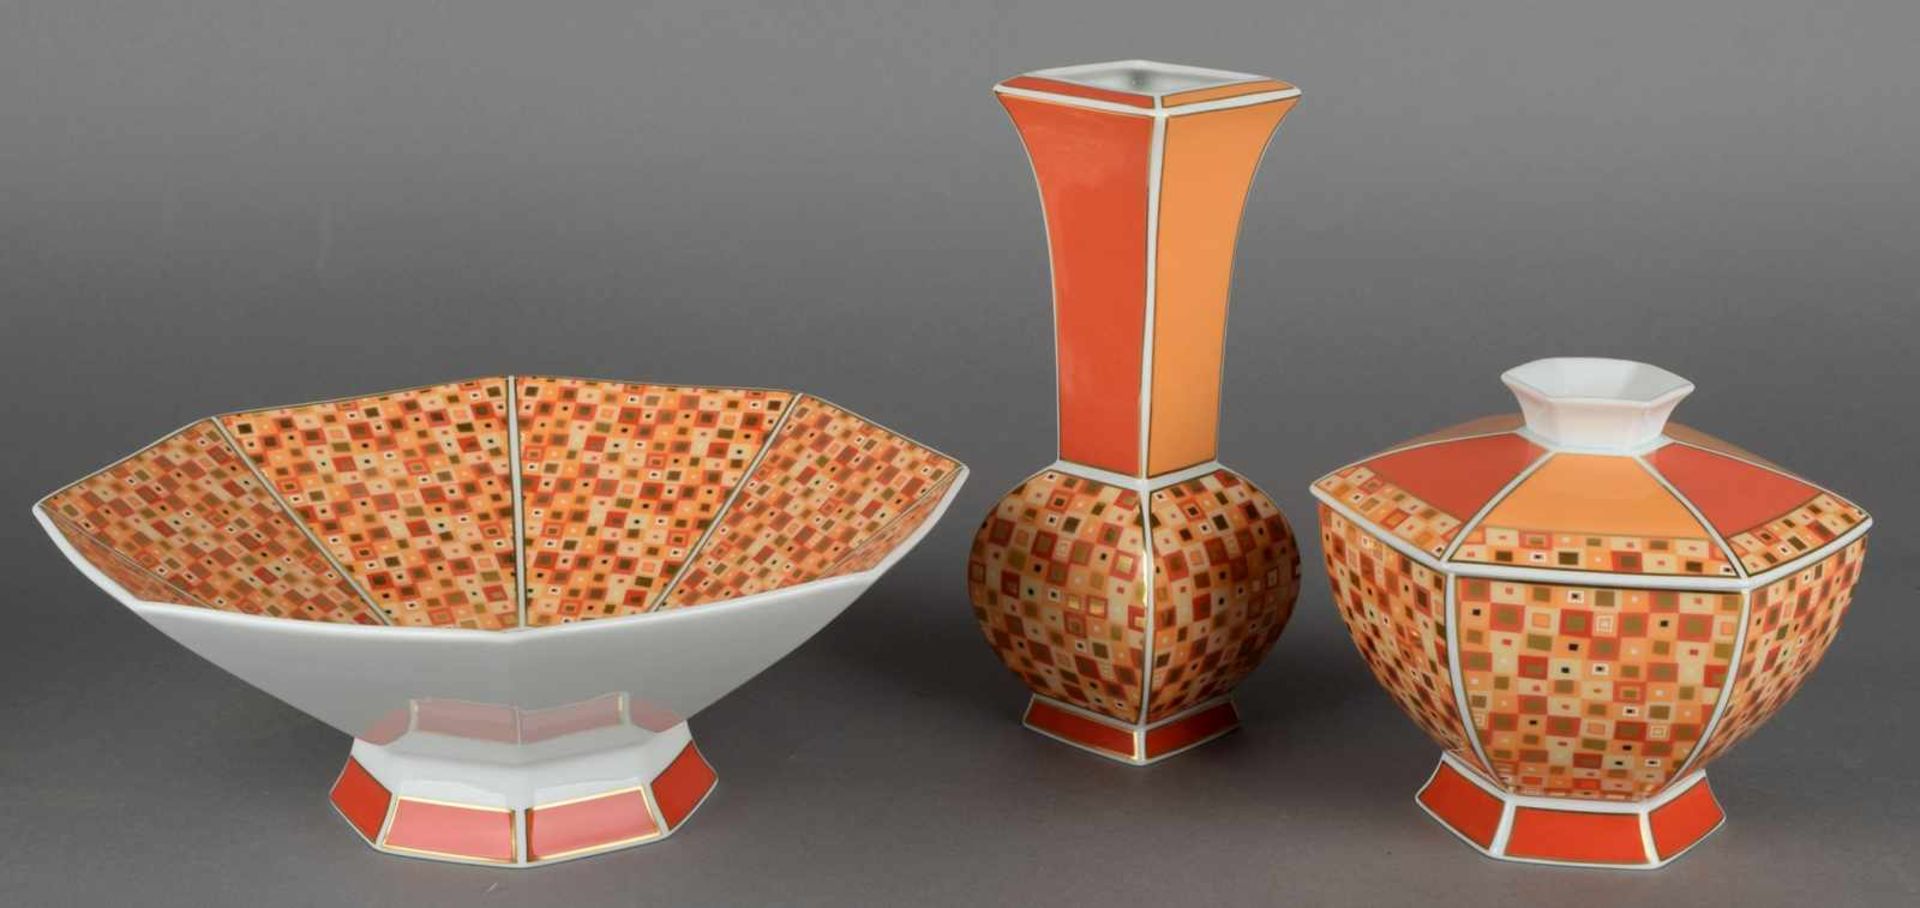 Schale, Vase und Zierdose Hersteller: Kaiser Porzellan, Staffelstein, Dekor "Collage", polygonale - Bild 2 aus 2